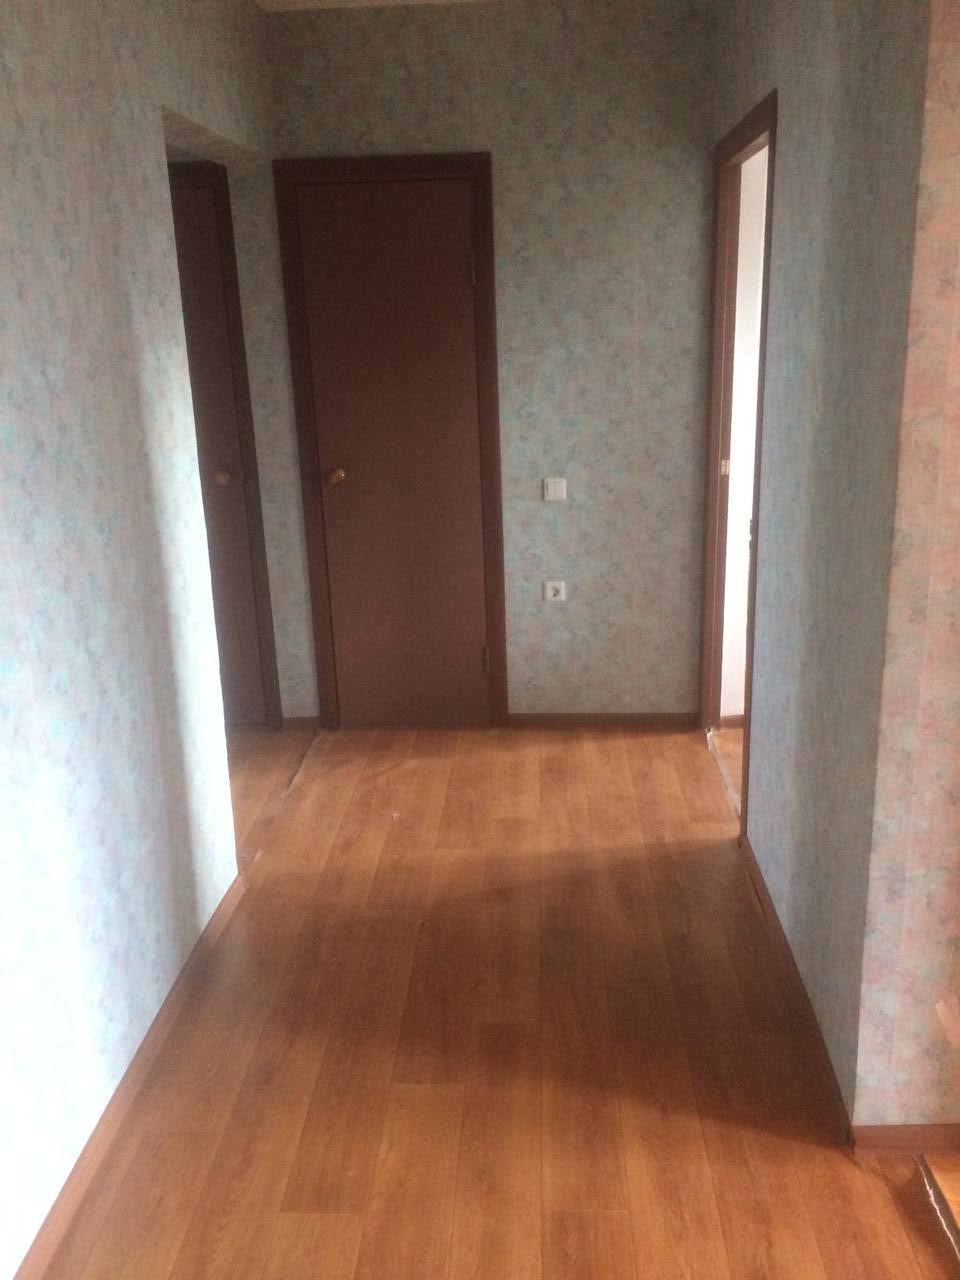 Продается отличная квартира в новом доме в г. Волжске. Квартира большая, светлая, очень теплая.Окна стеклопакет,... - 4